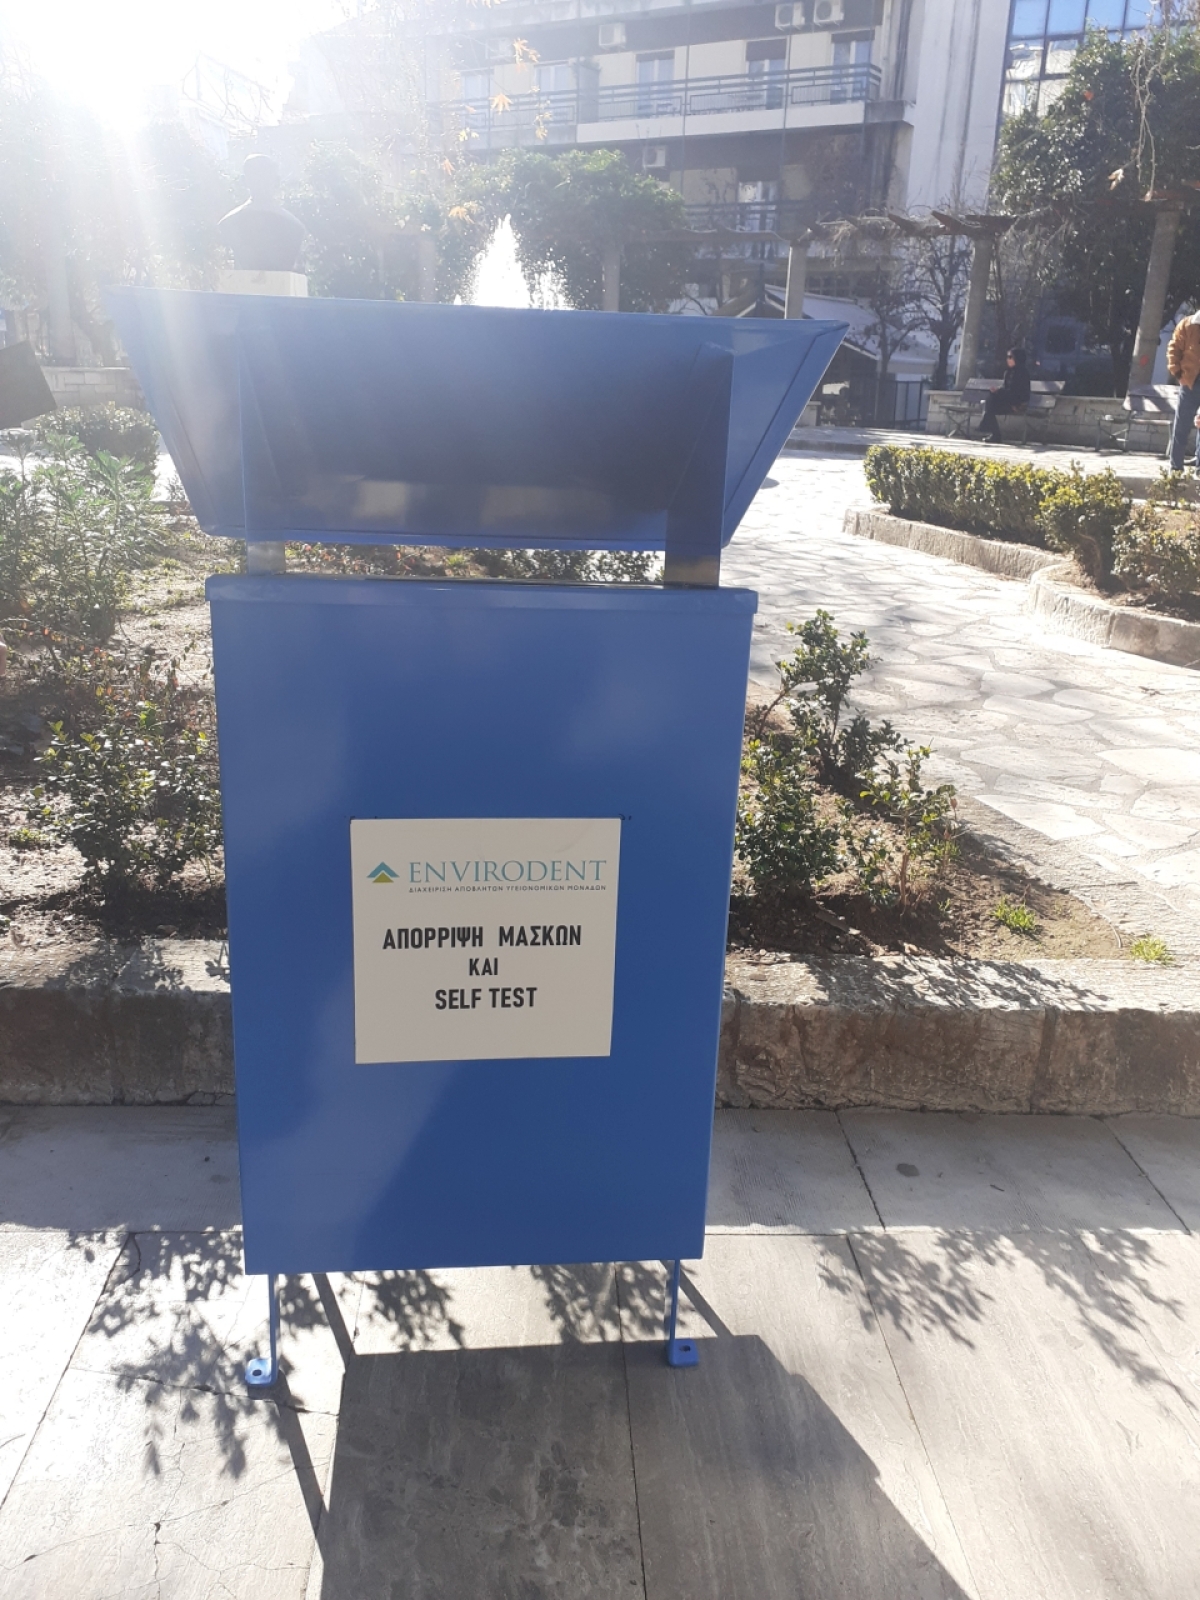 Δήμος Αγρινίου: Χρησιμοποιούμε τους ειδικούς κάδους απορριμμάτων (hospital-box)